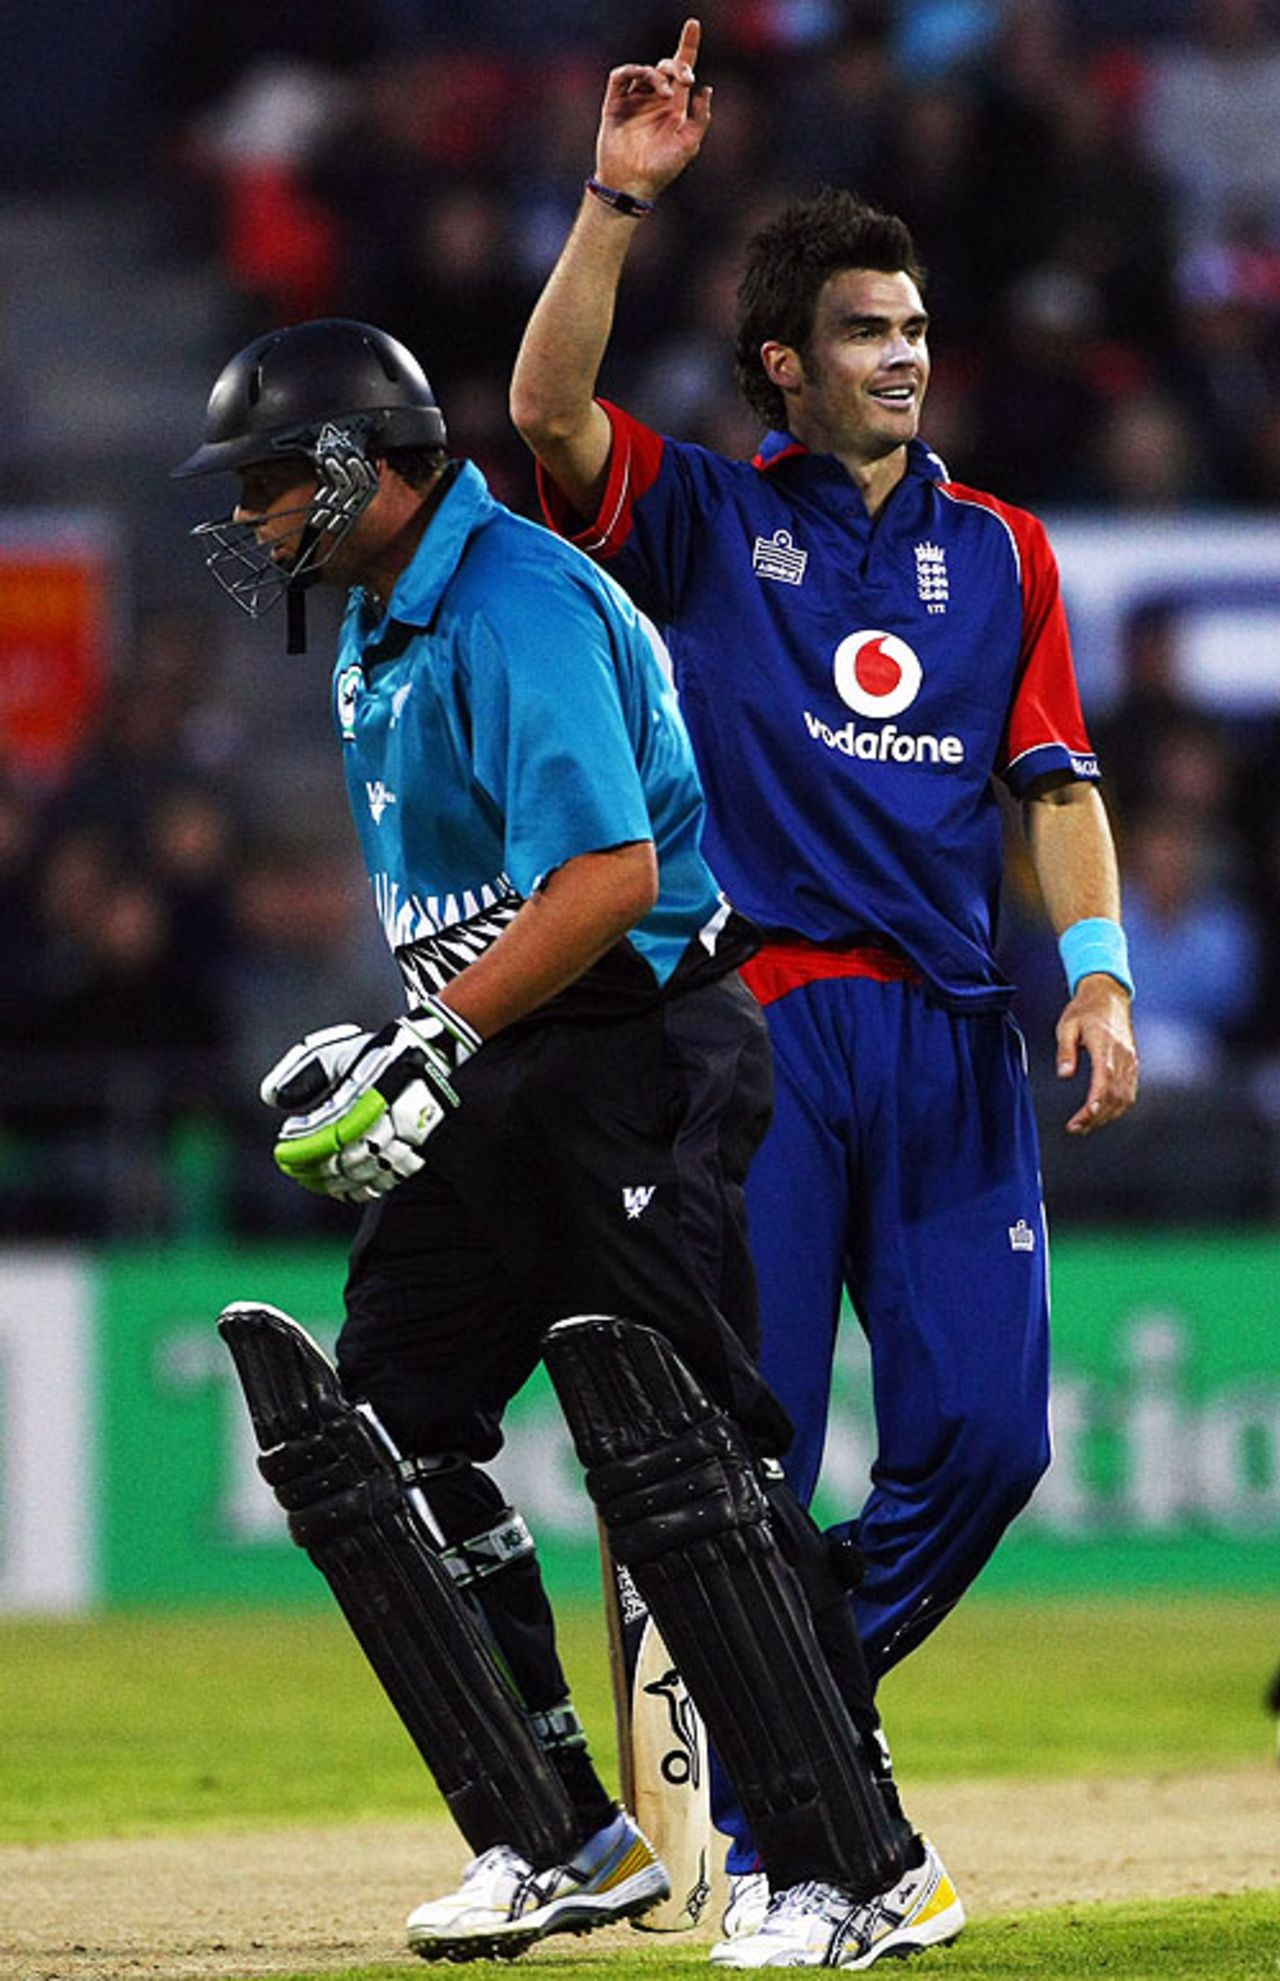 James Anderson dismisses New Zealand's opener Jesse Ryder, New Zealand v England, 2nd Twenty20, Christchurch, February 7, 2008